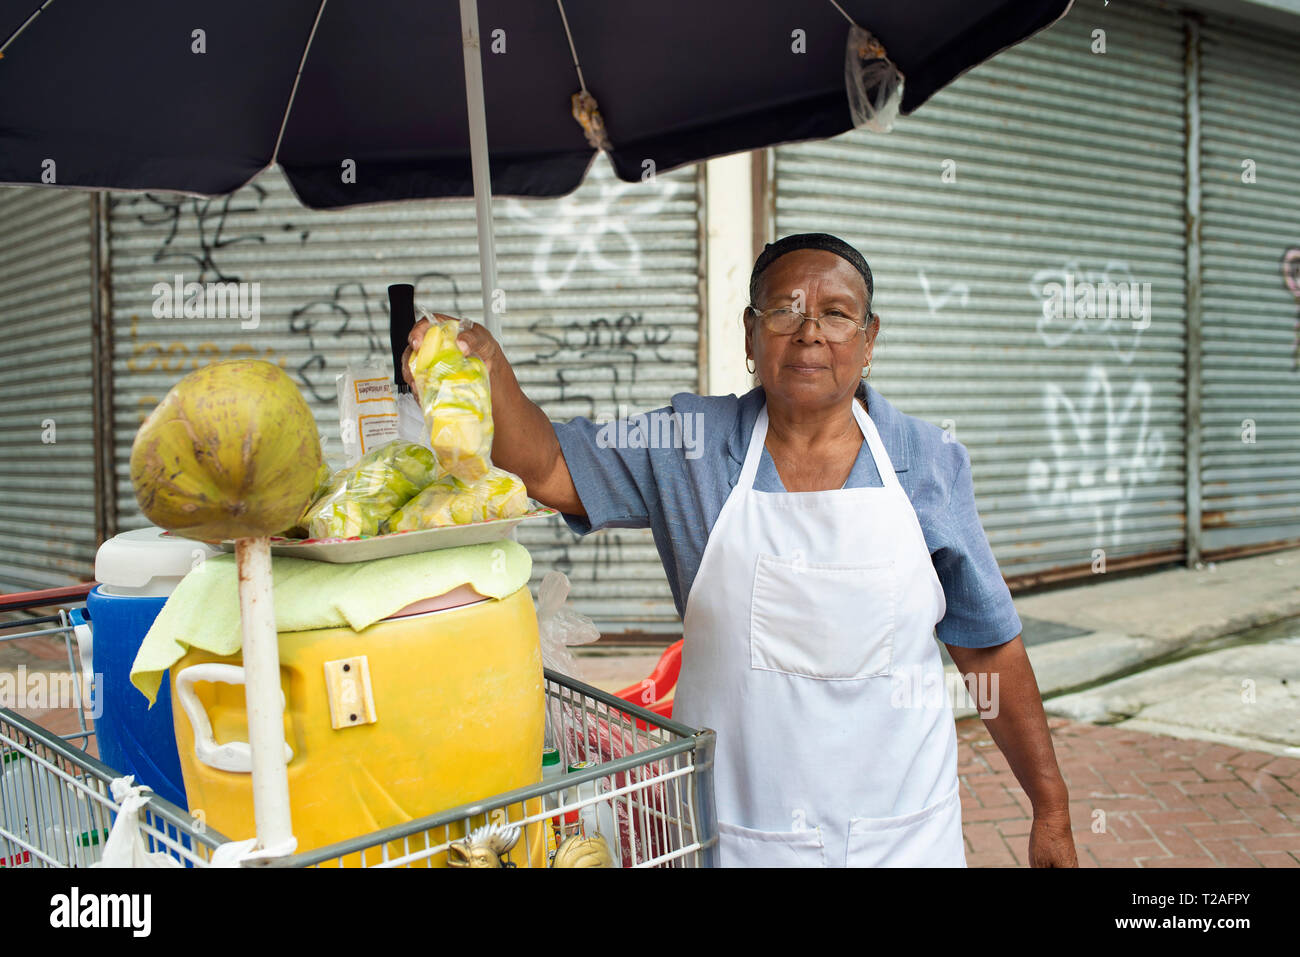 Lokale Frau verkaufen Obst auf der Haupteinkaufsstraße, Avenida Central. Panama City, Panama. Nur für den redaktionellen Gebrauch bestimmt. Okt 2018 Stockfoto